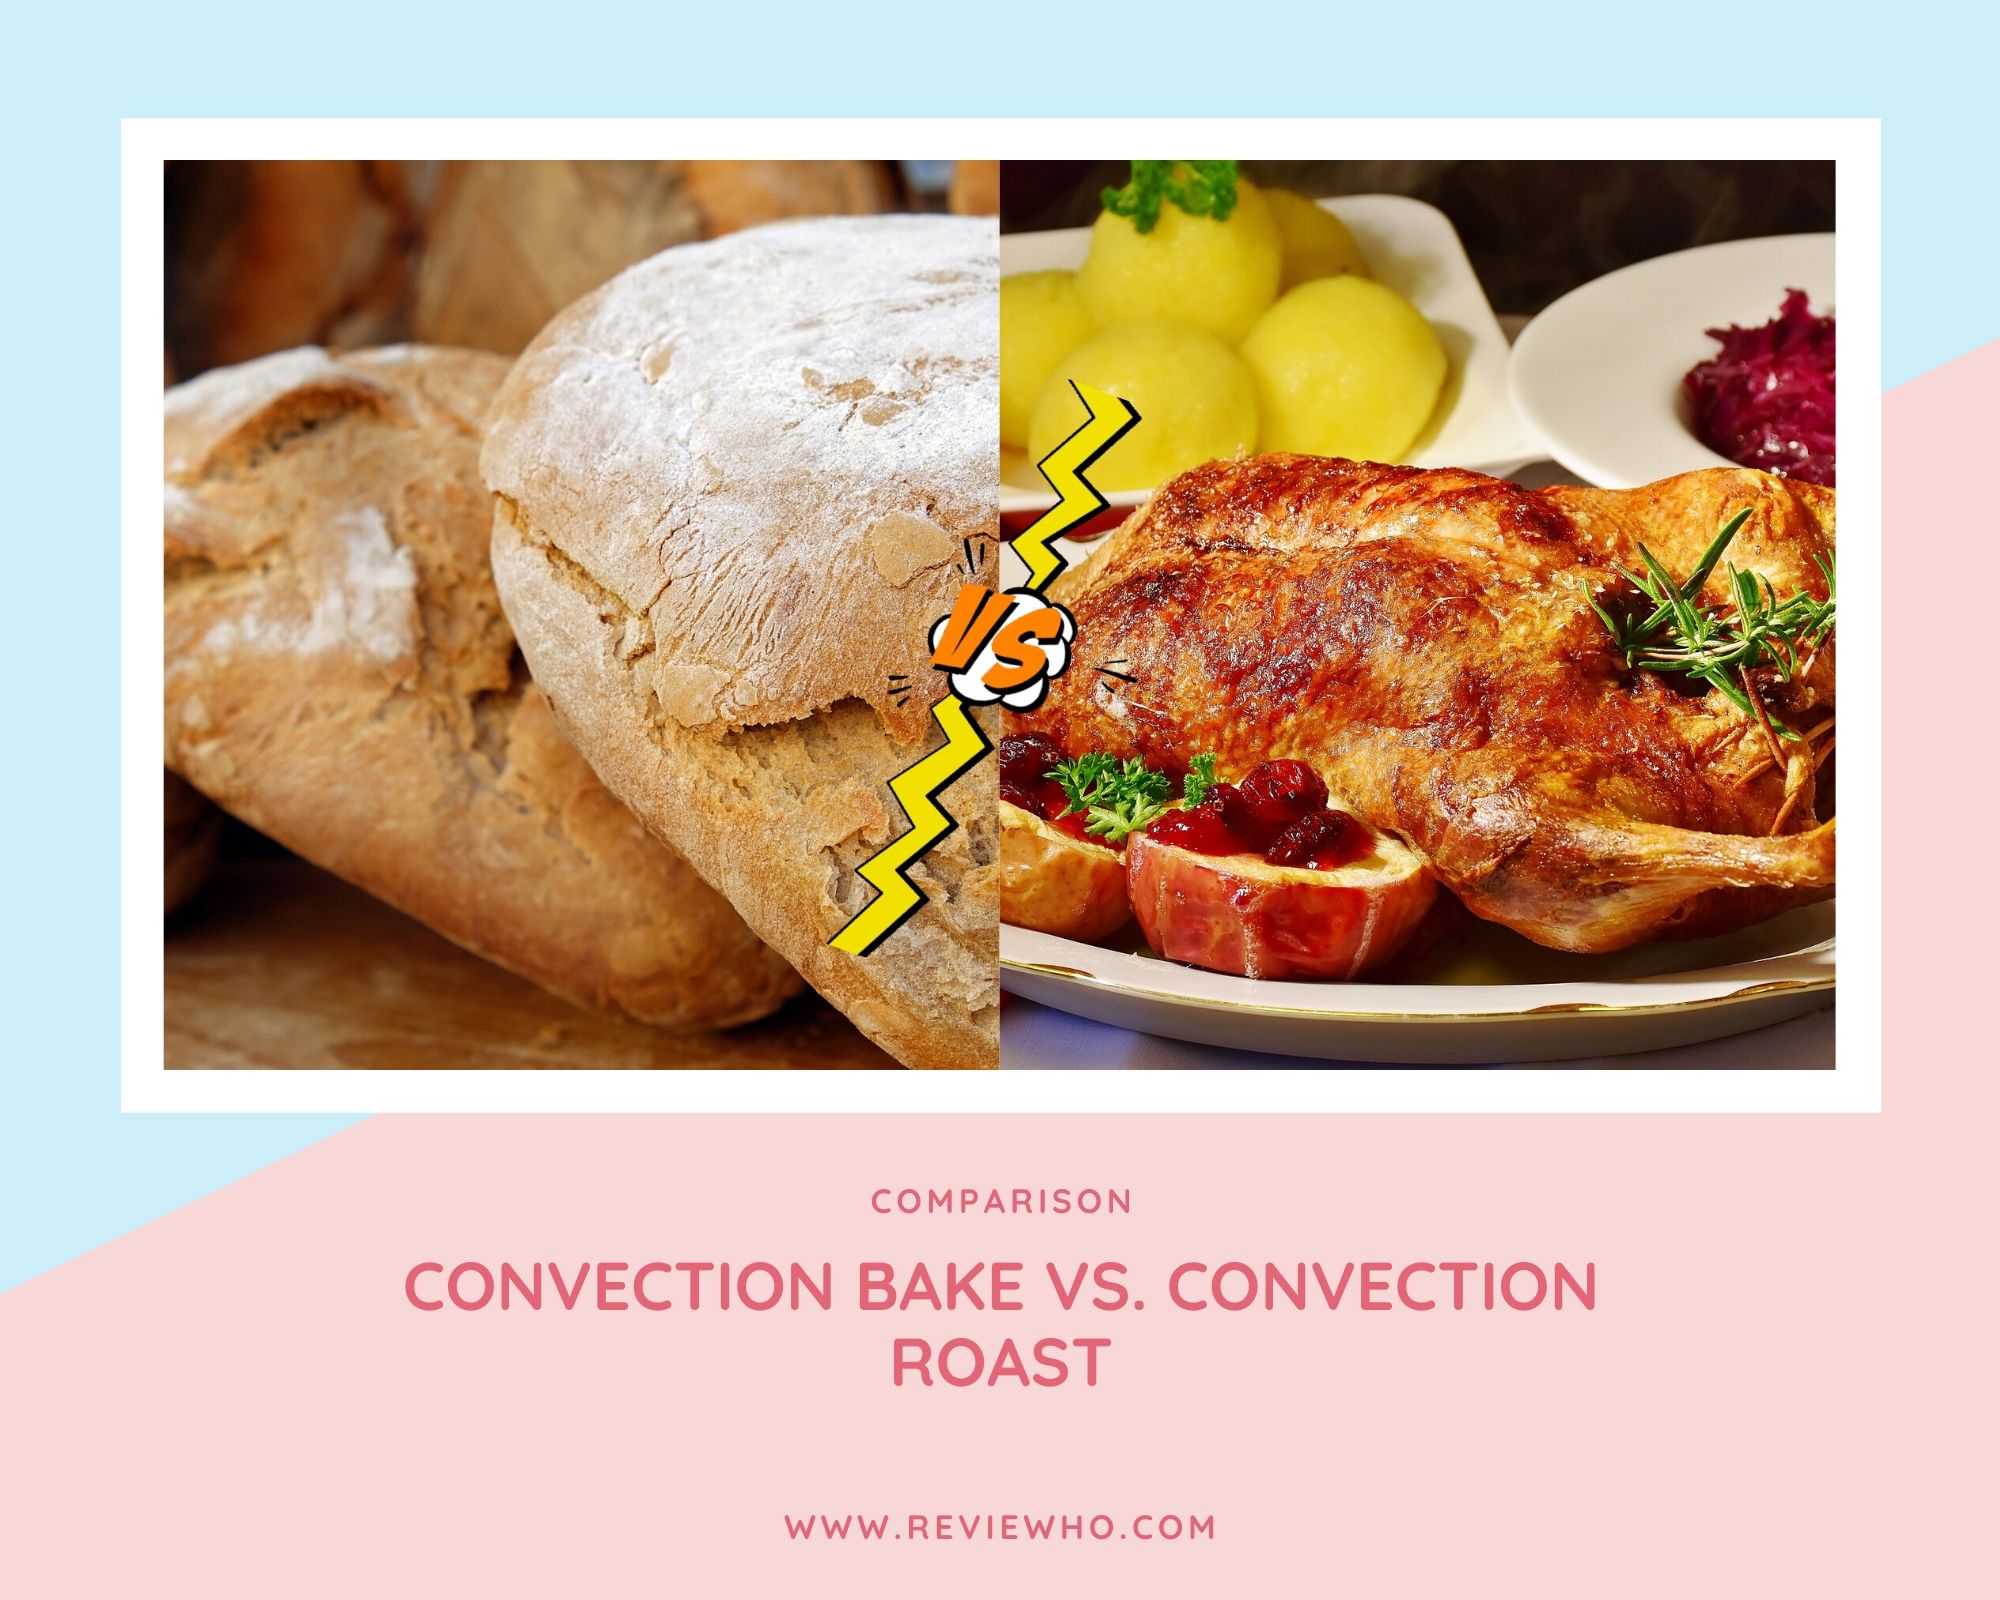 convection bake vs roast